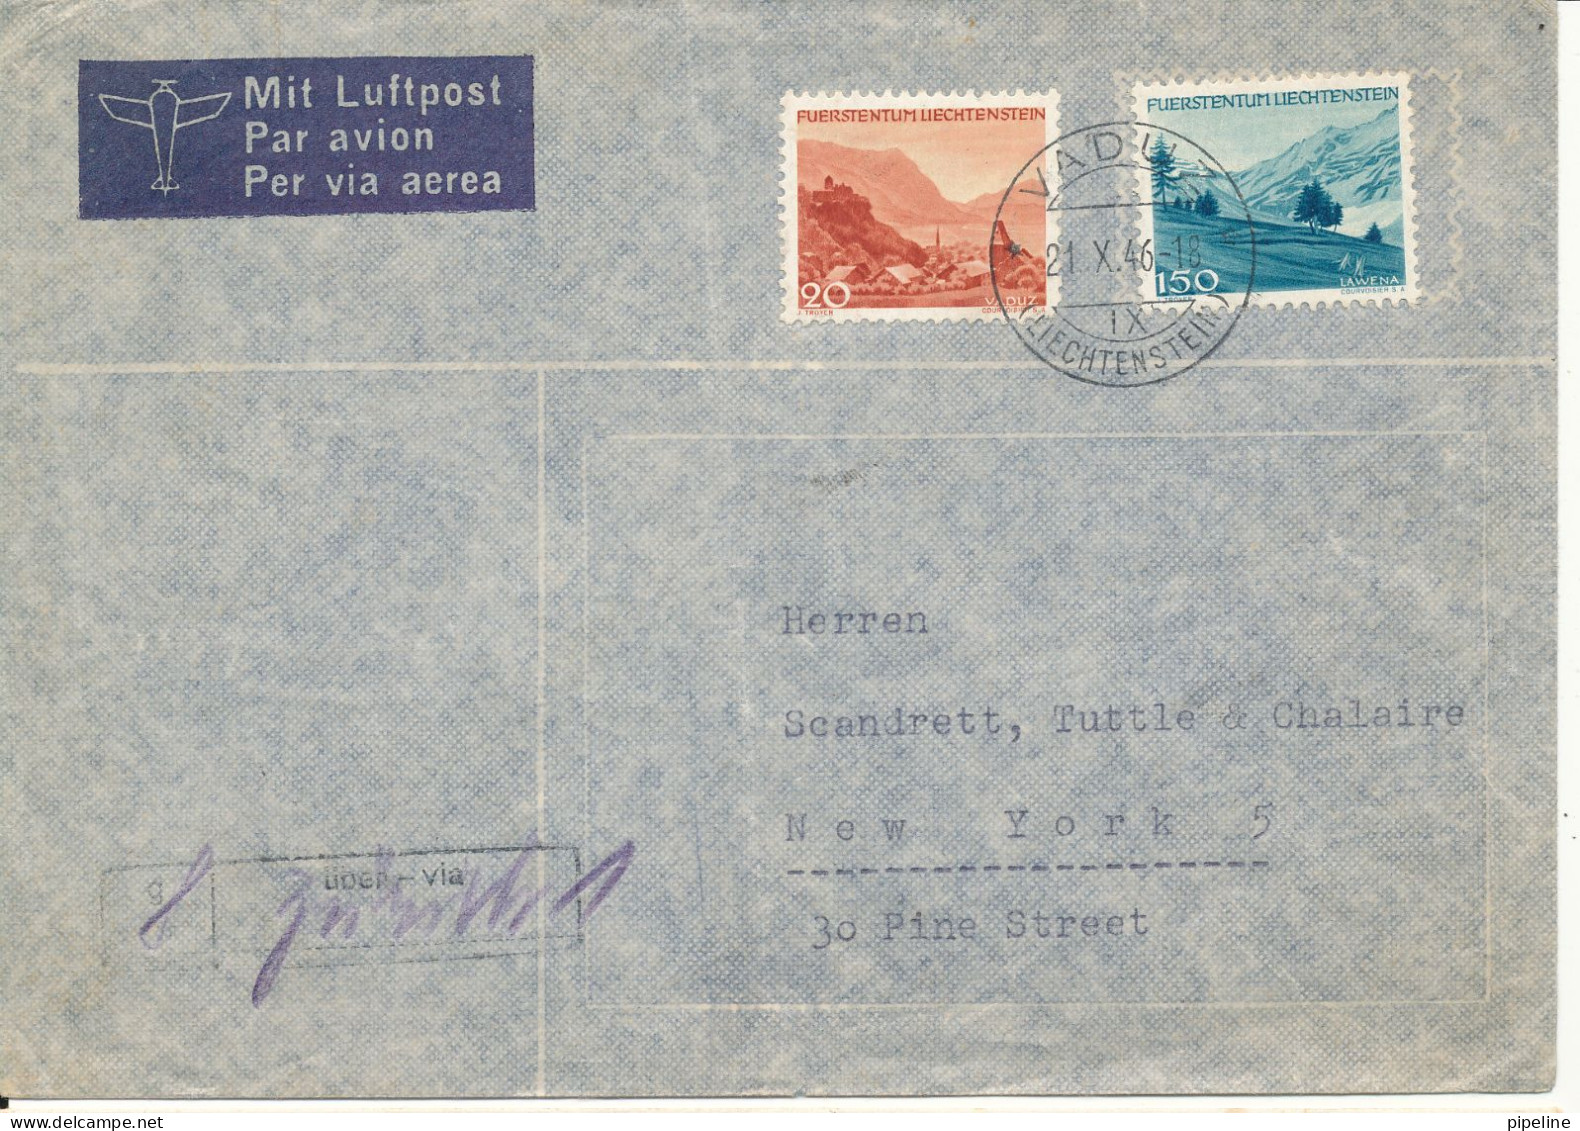 Liechtenstein Air Mail Cover Sent To USA 21-10-1946 Very Good Franked - Luftpost